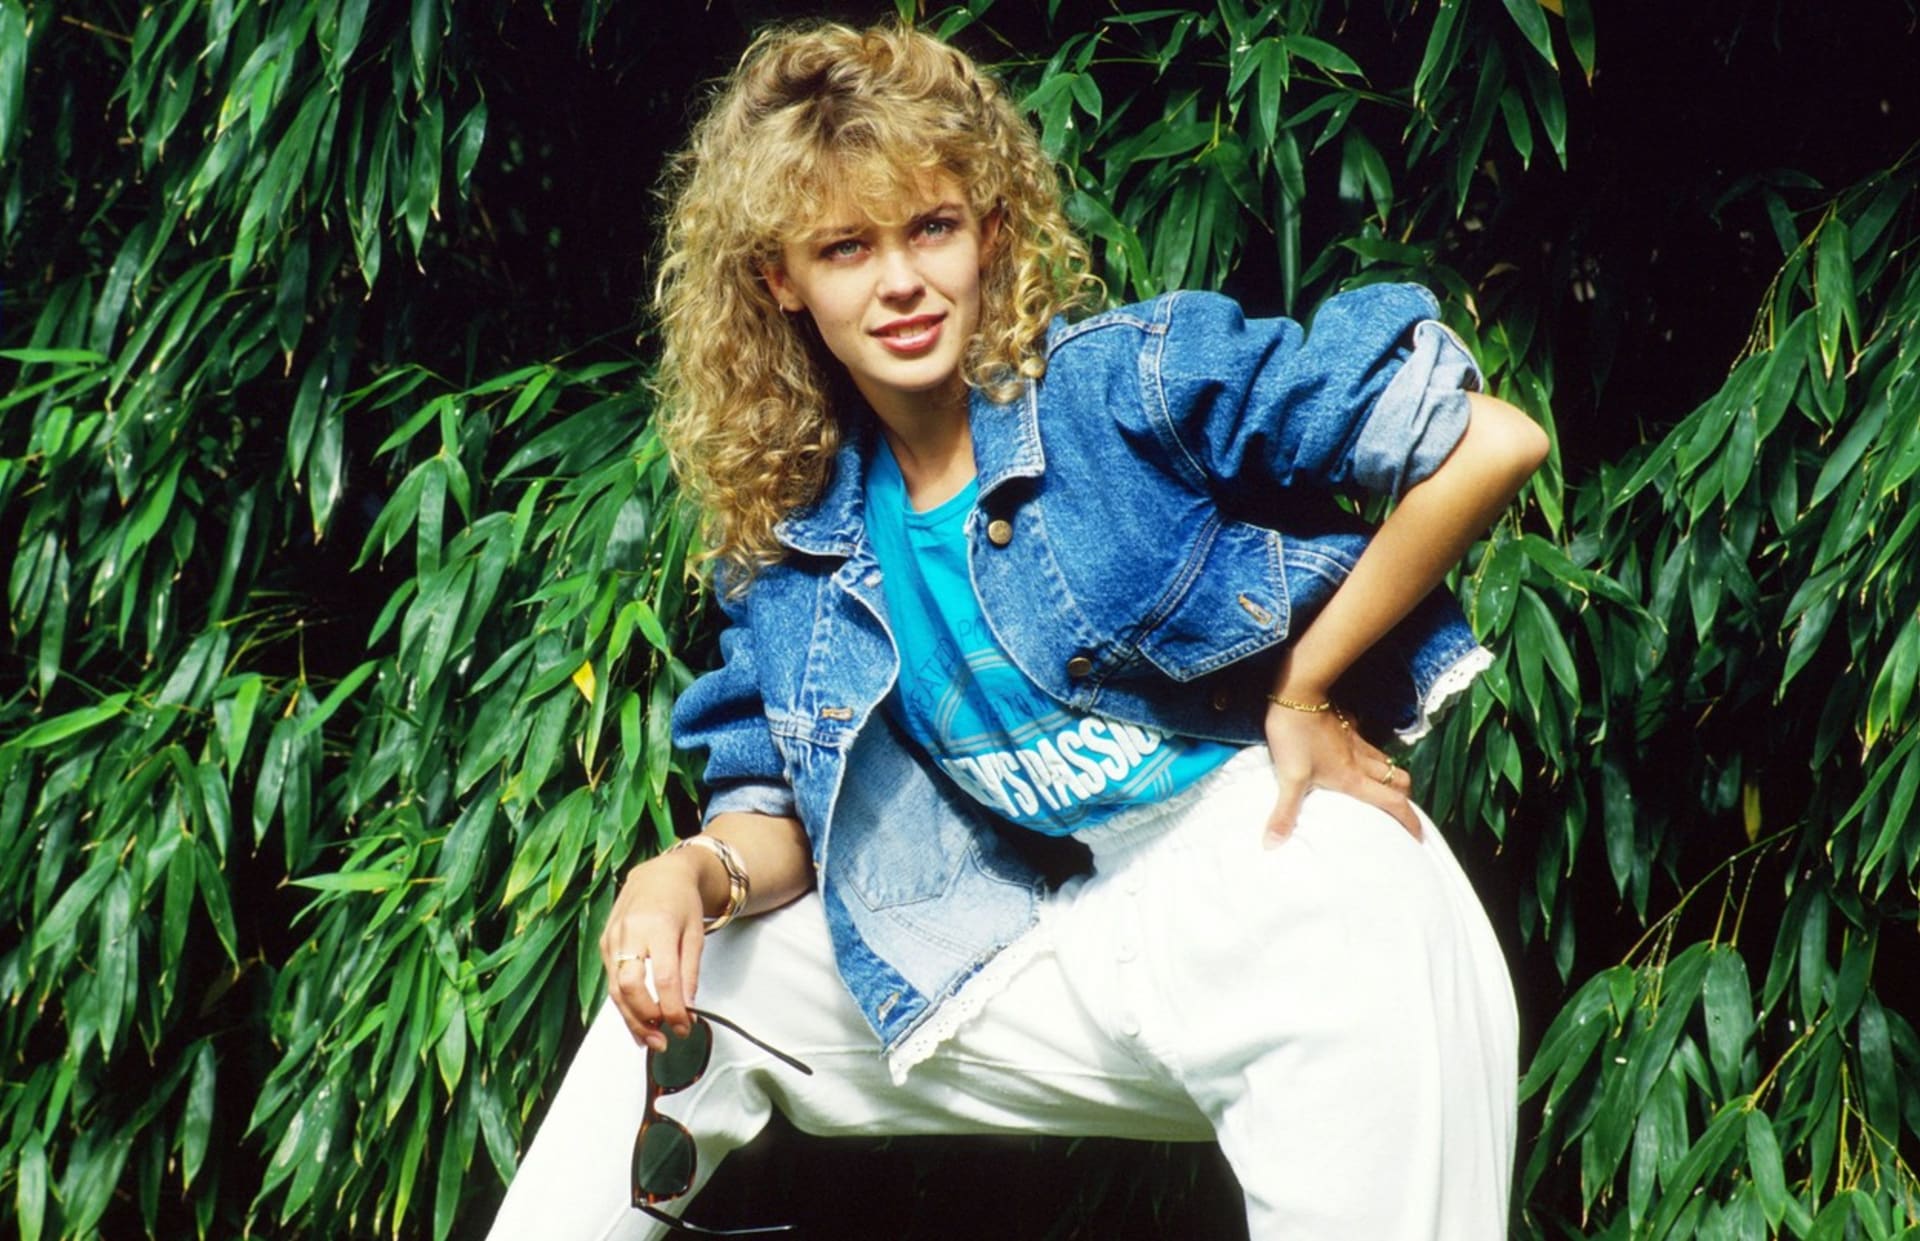 Málokdo ví, že Kylie Minogue ještě před pěveckou kariérou zaznamenala úspěch jako herečka v australské telenovele Neighbours.